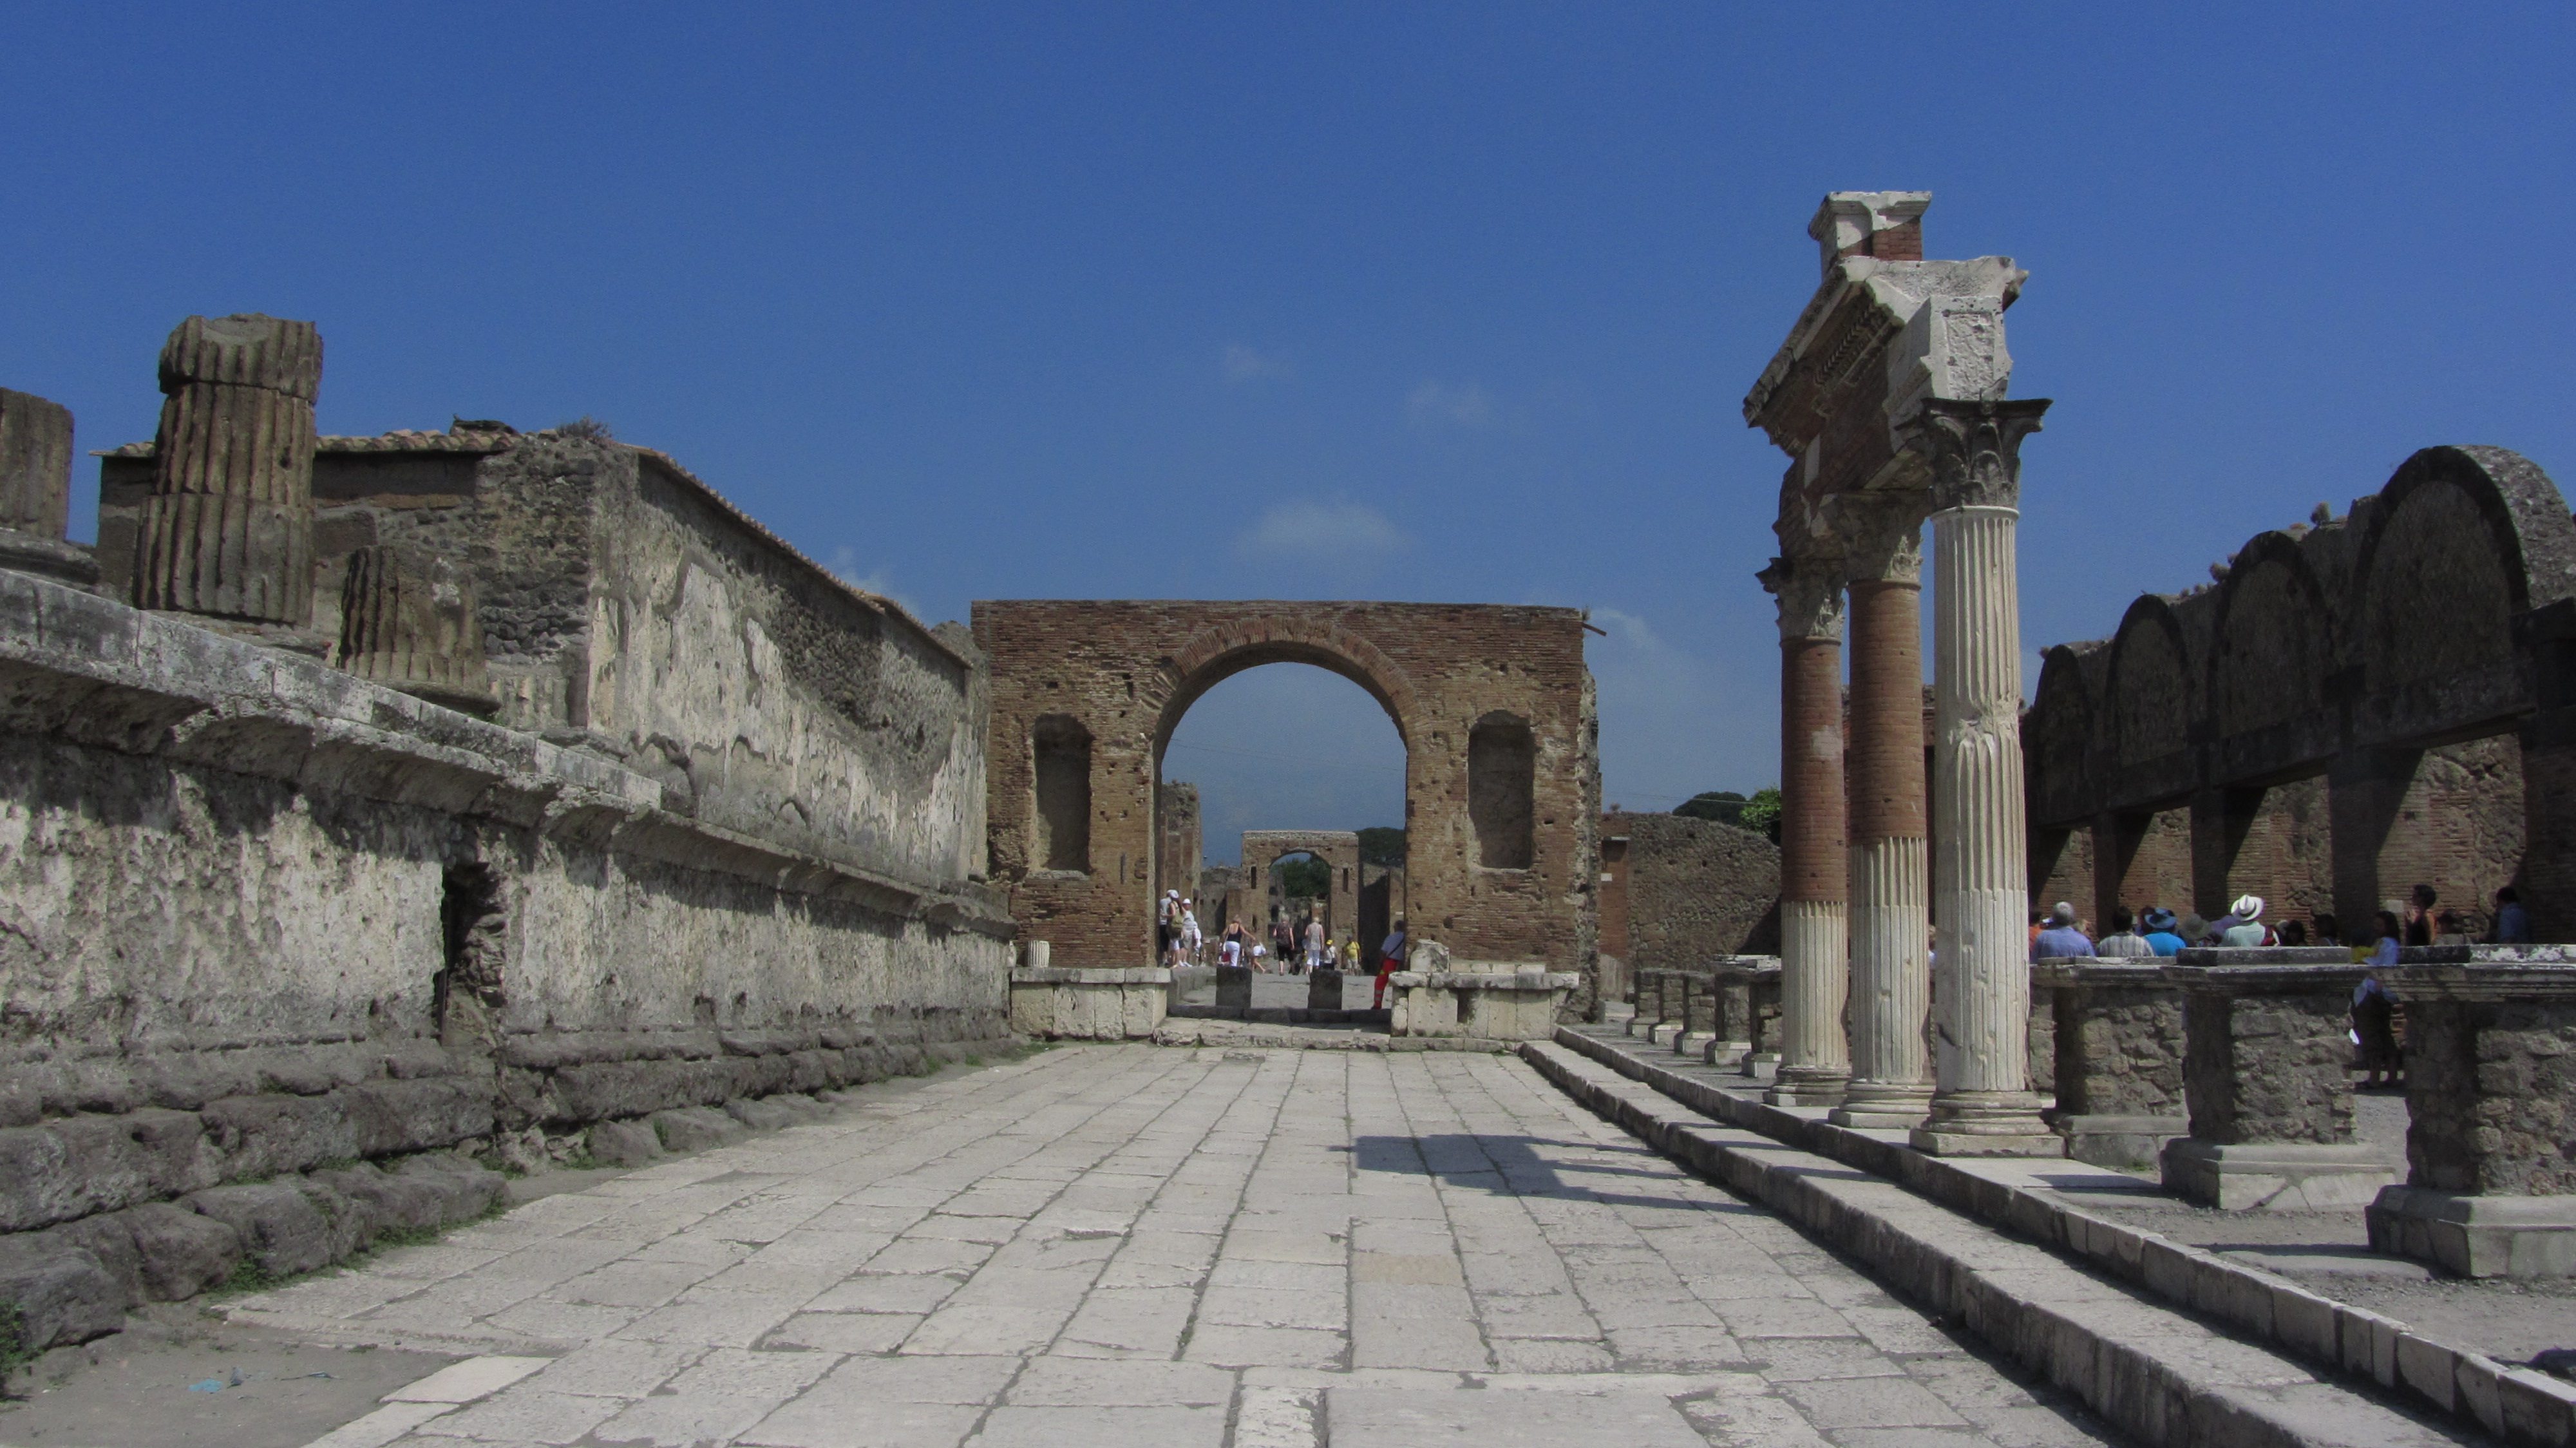 Tours of Pompeii with Lello & Co.